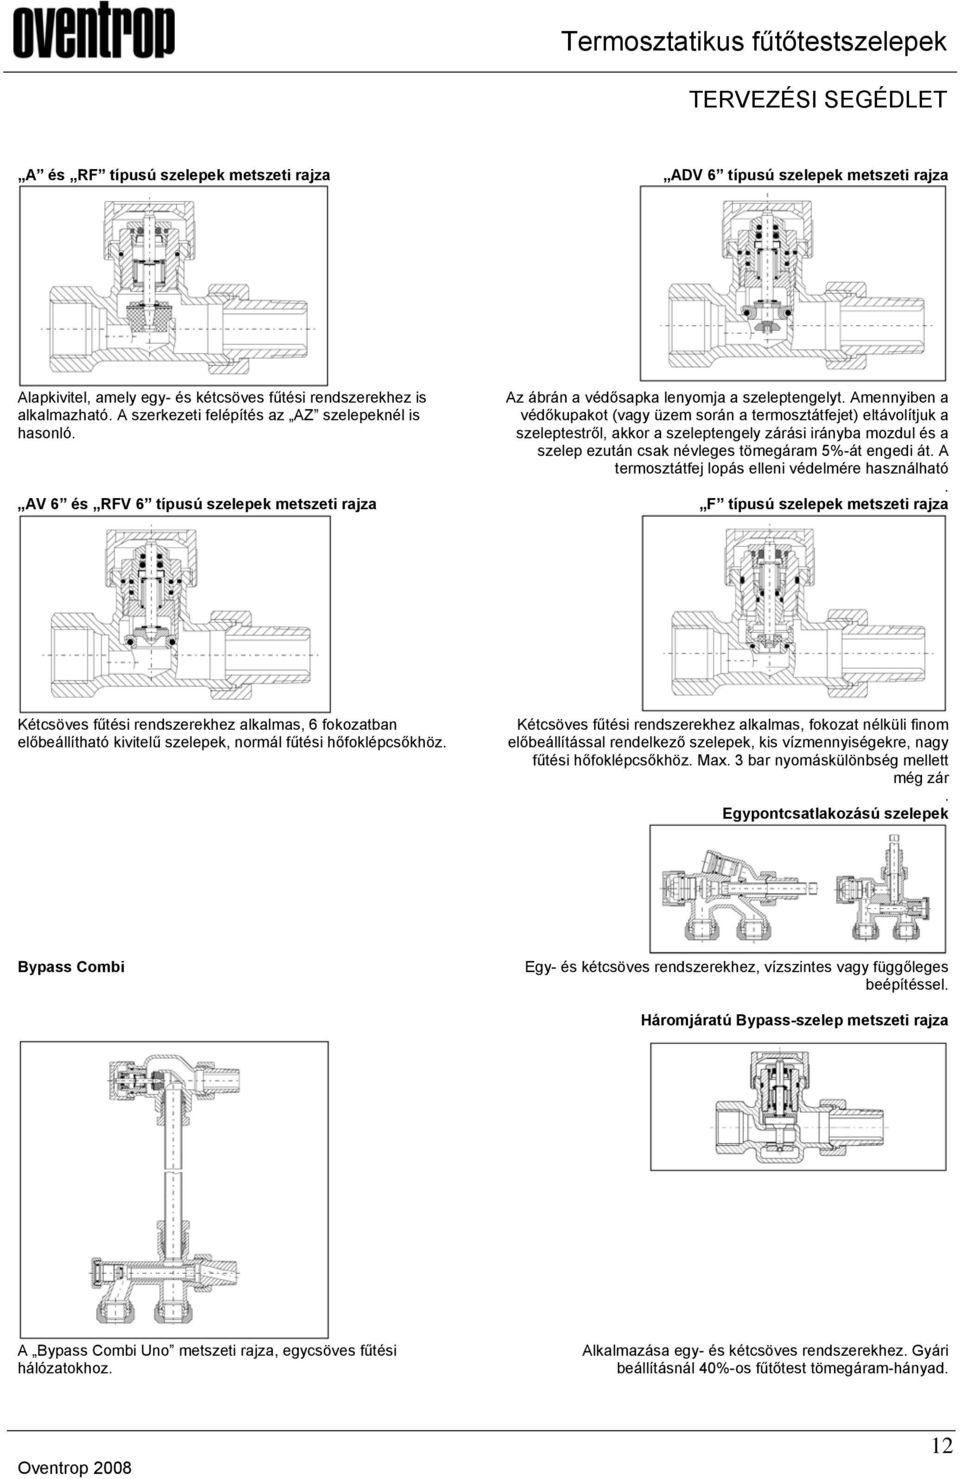 Termosztatikus fűtőtestszelepek - PDF Ingyenes letöltés